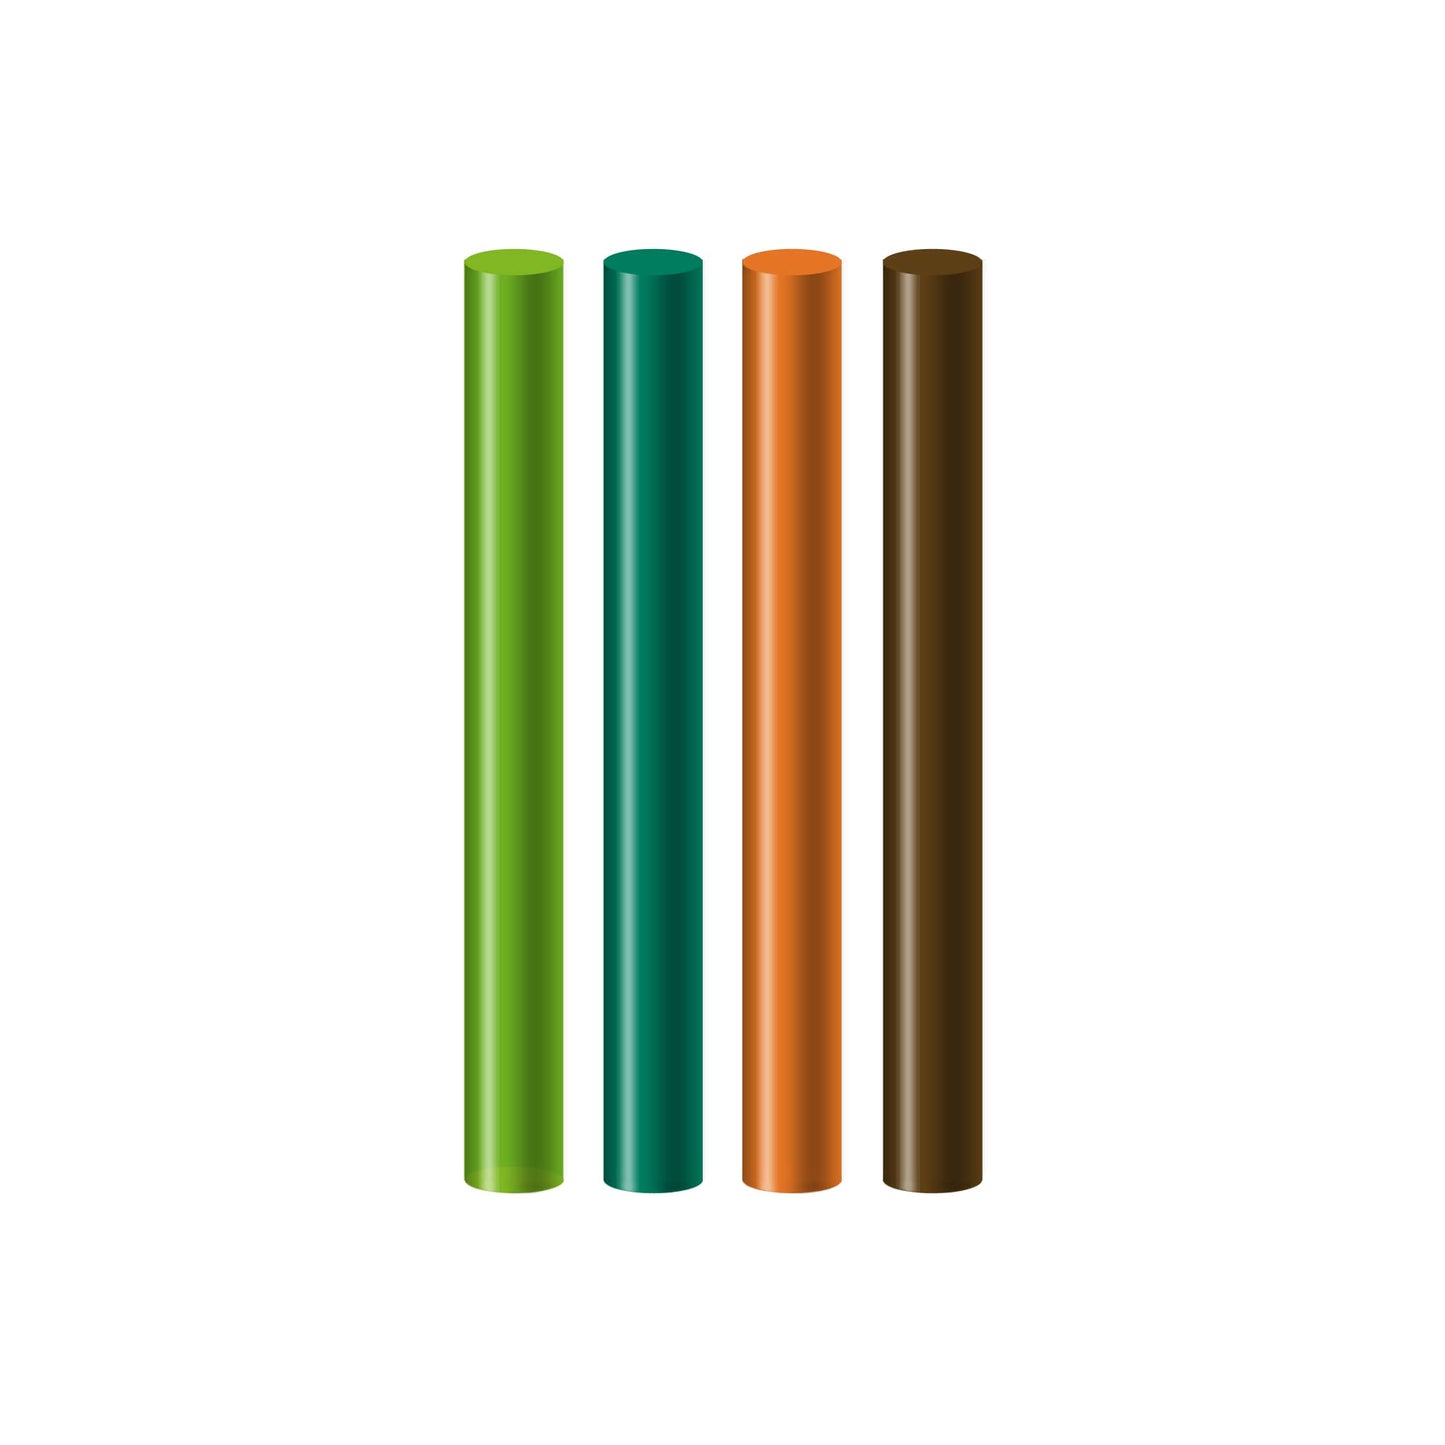 Seccorell-Farbstäbchen in natürlichen Grün- und Brauntönen, perfekt für die Darstellung von Landschaften wie Feldern, Wäldern und Wiesen.